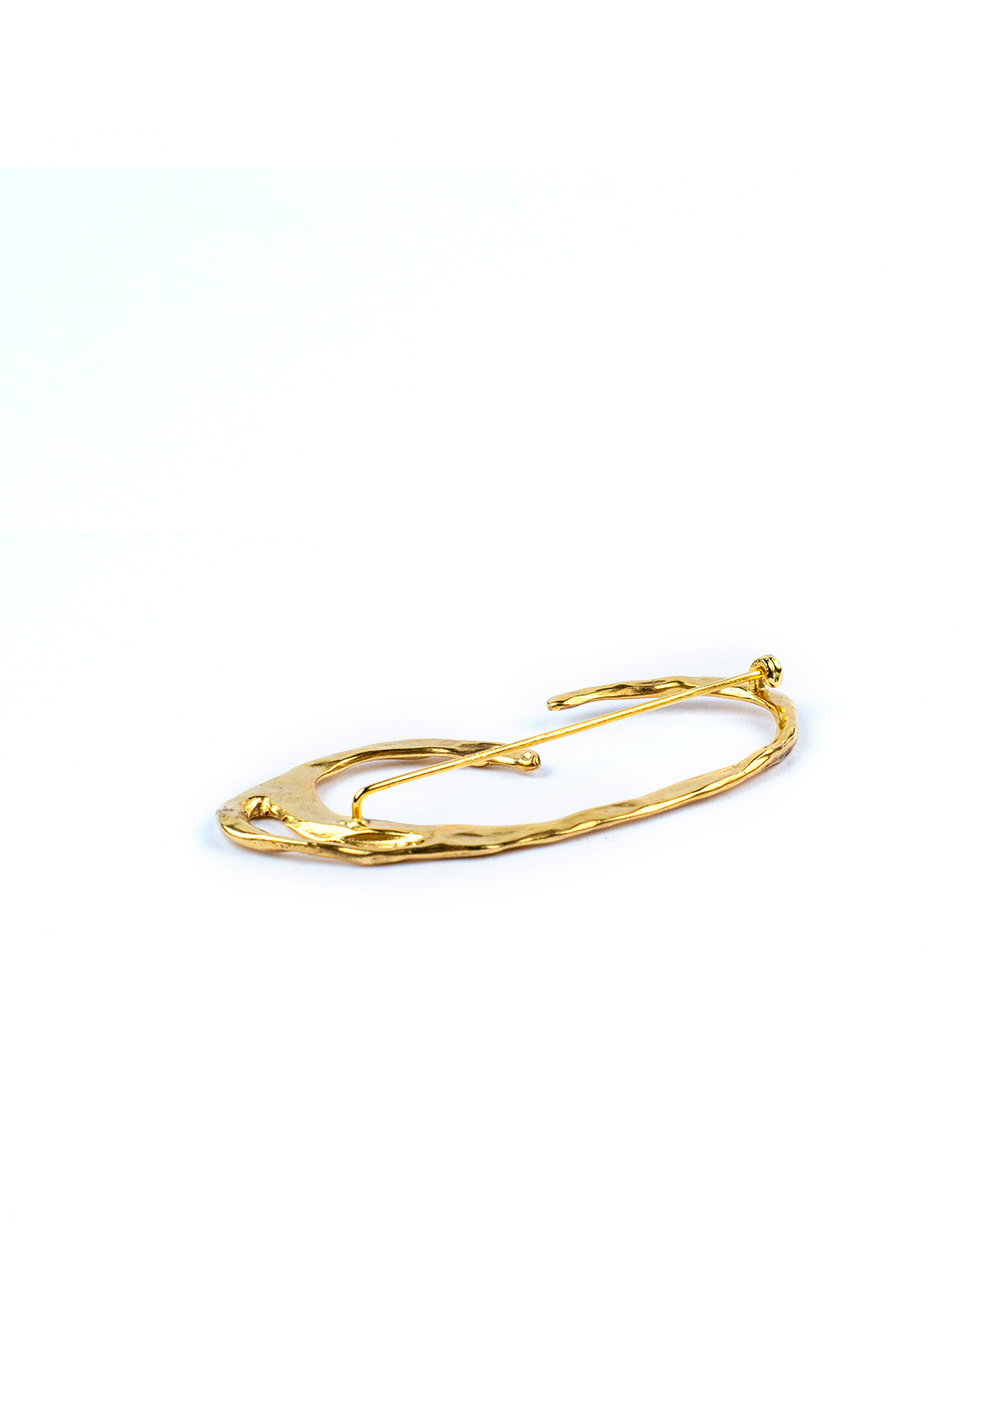 Broche Galatée – Doré à l’or fin 24 carats | Bresma | Label AÉ Paris - Image 2